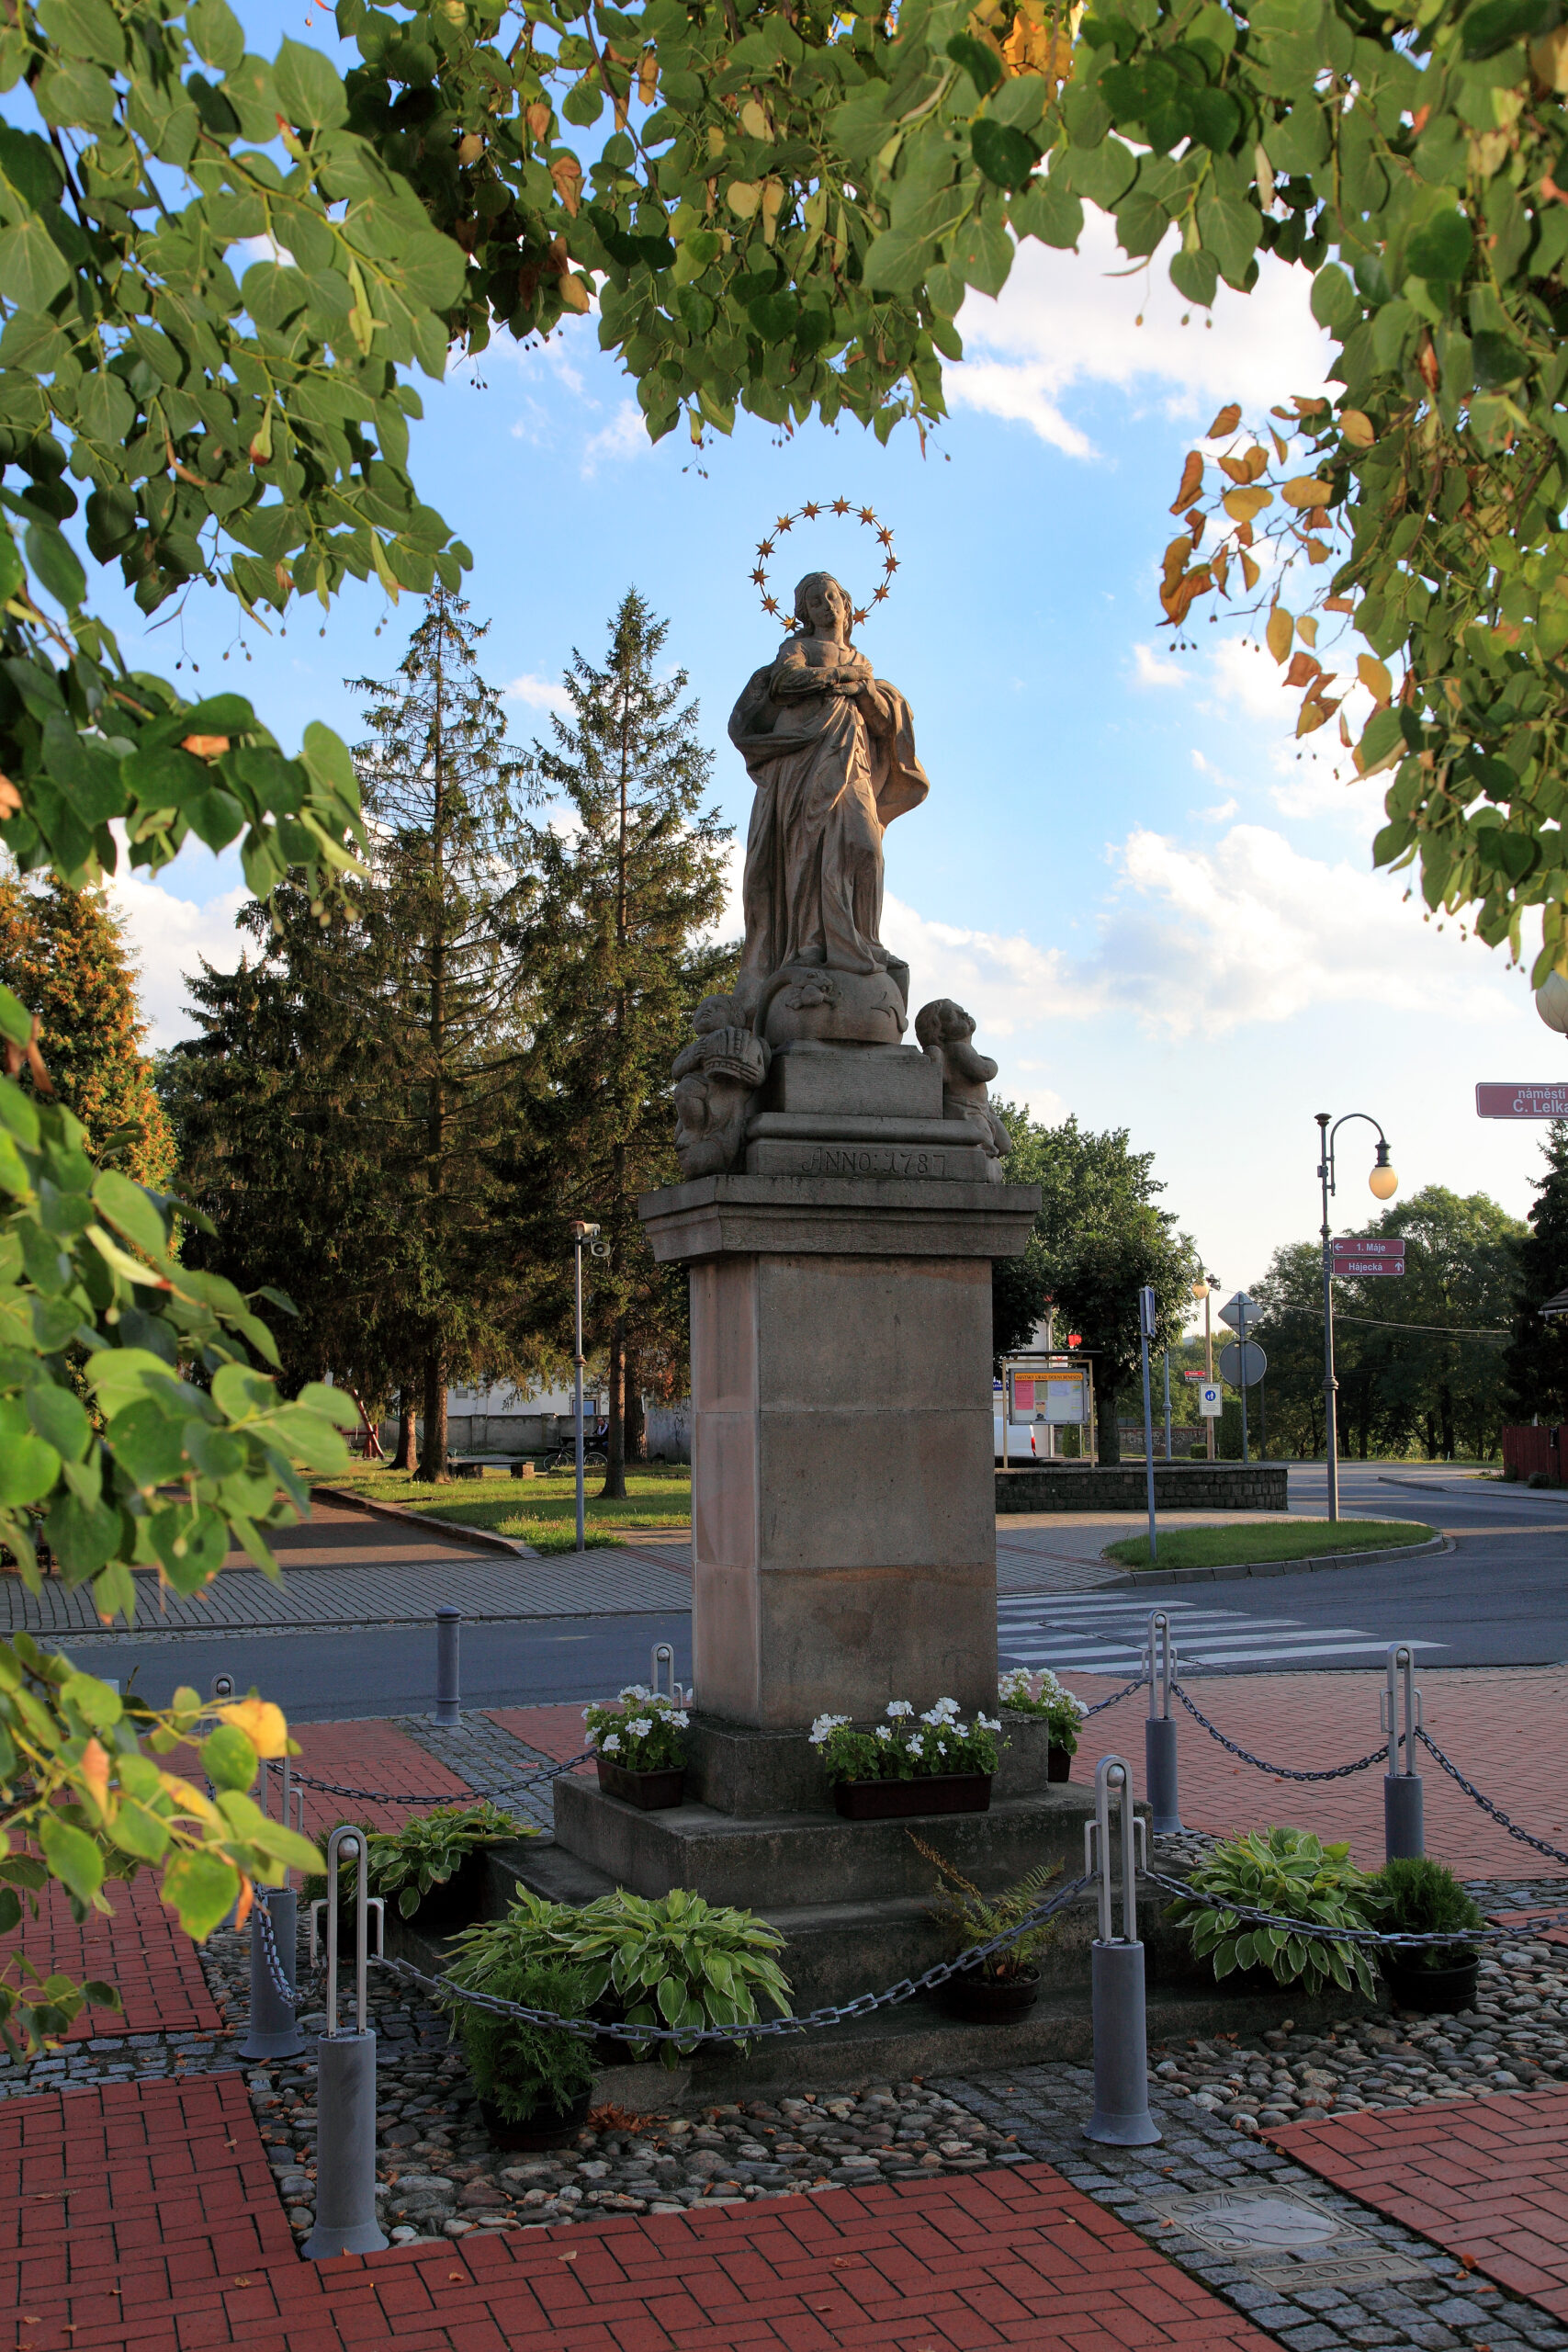 Socha Panny Marie v Dolním Benešově